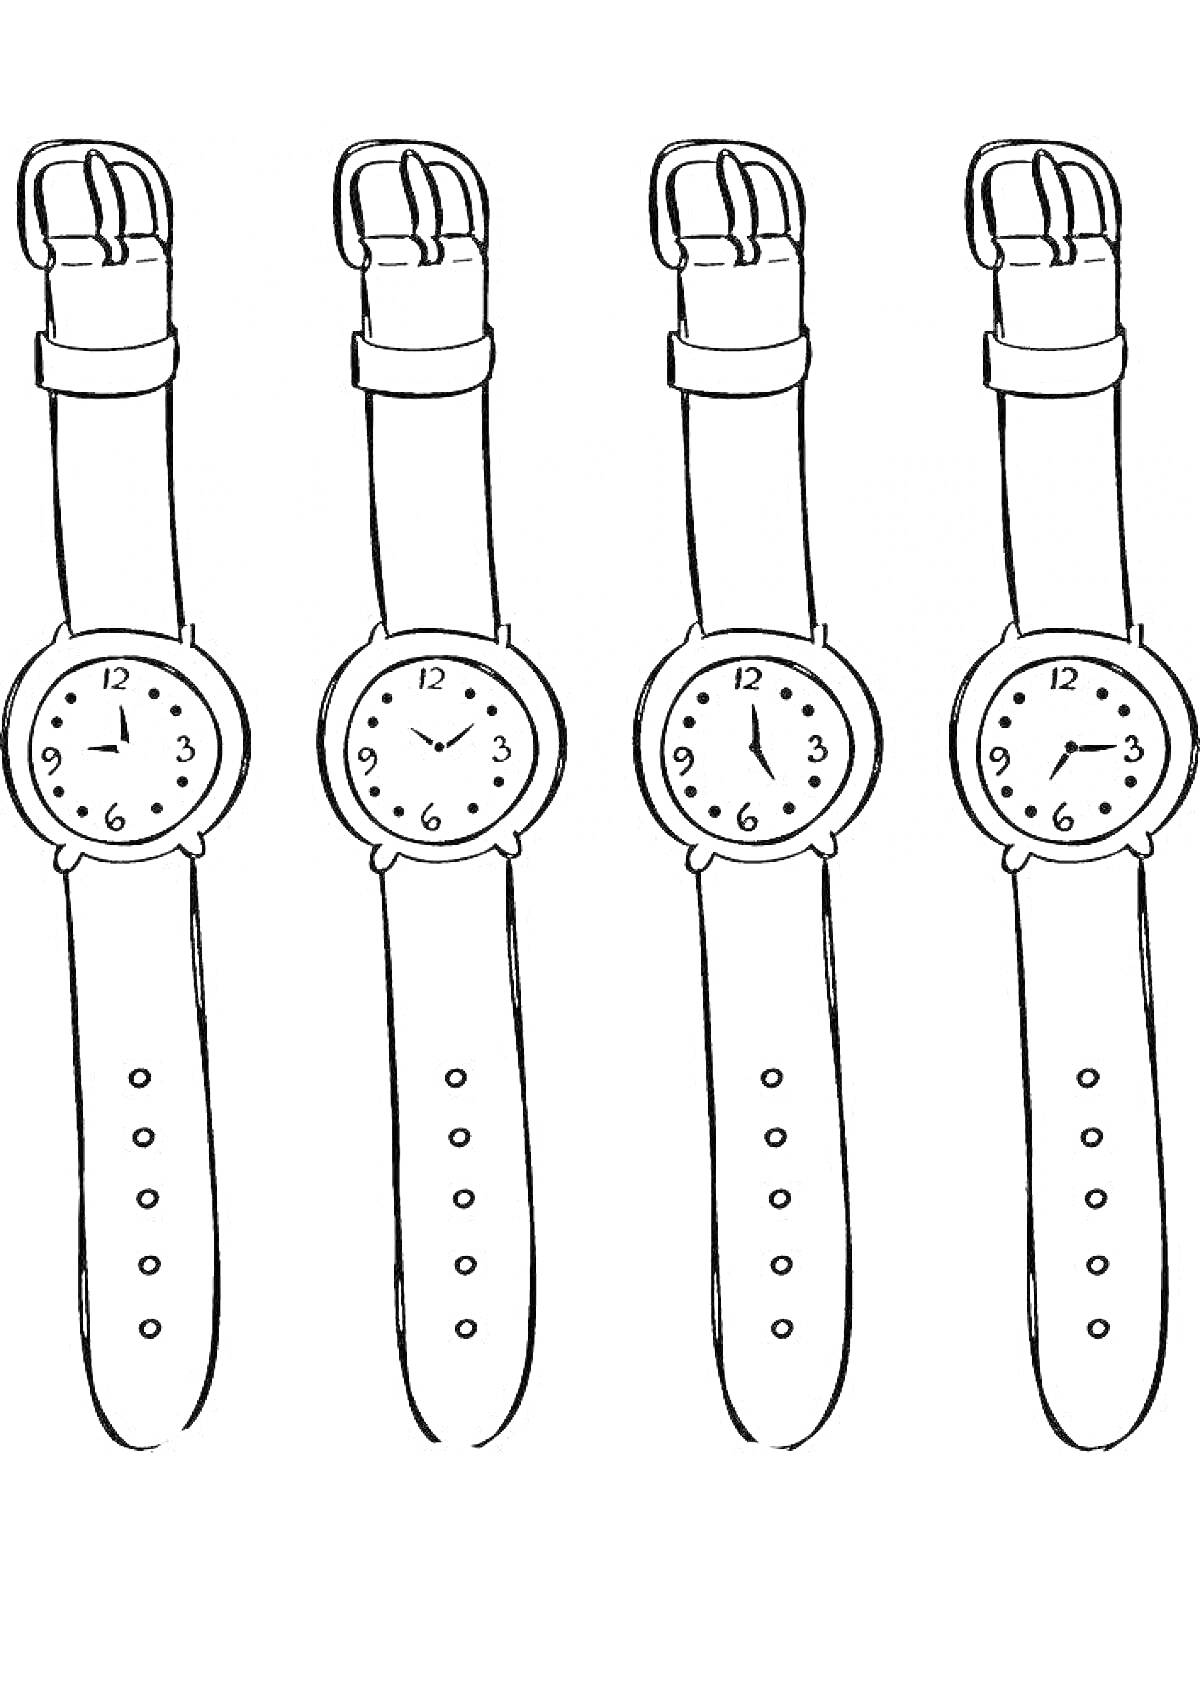 Раскраска Четыре наручных часа с кожаными ремешками и различными положениями стрелок